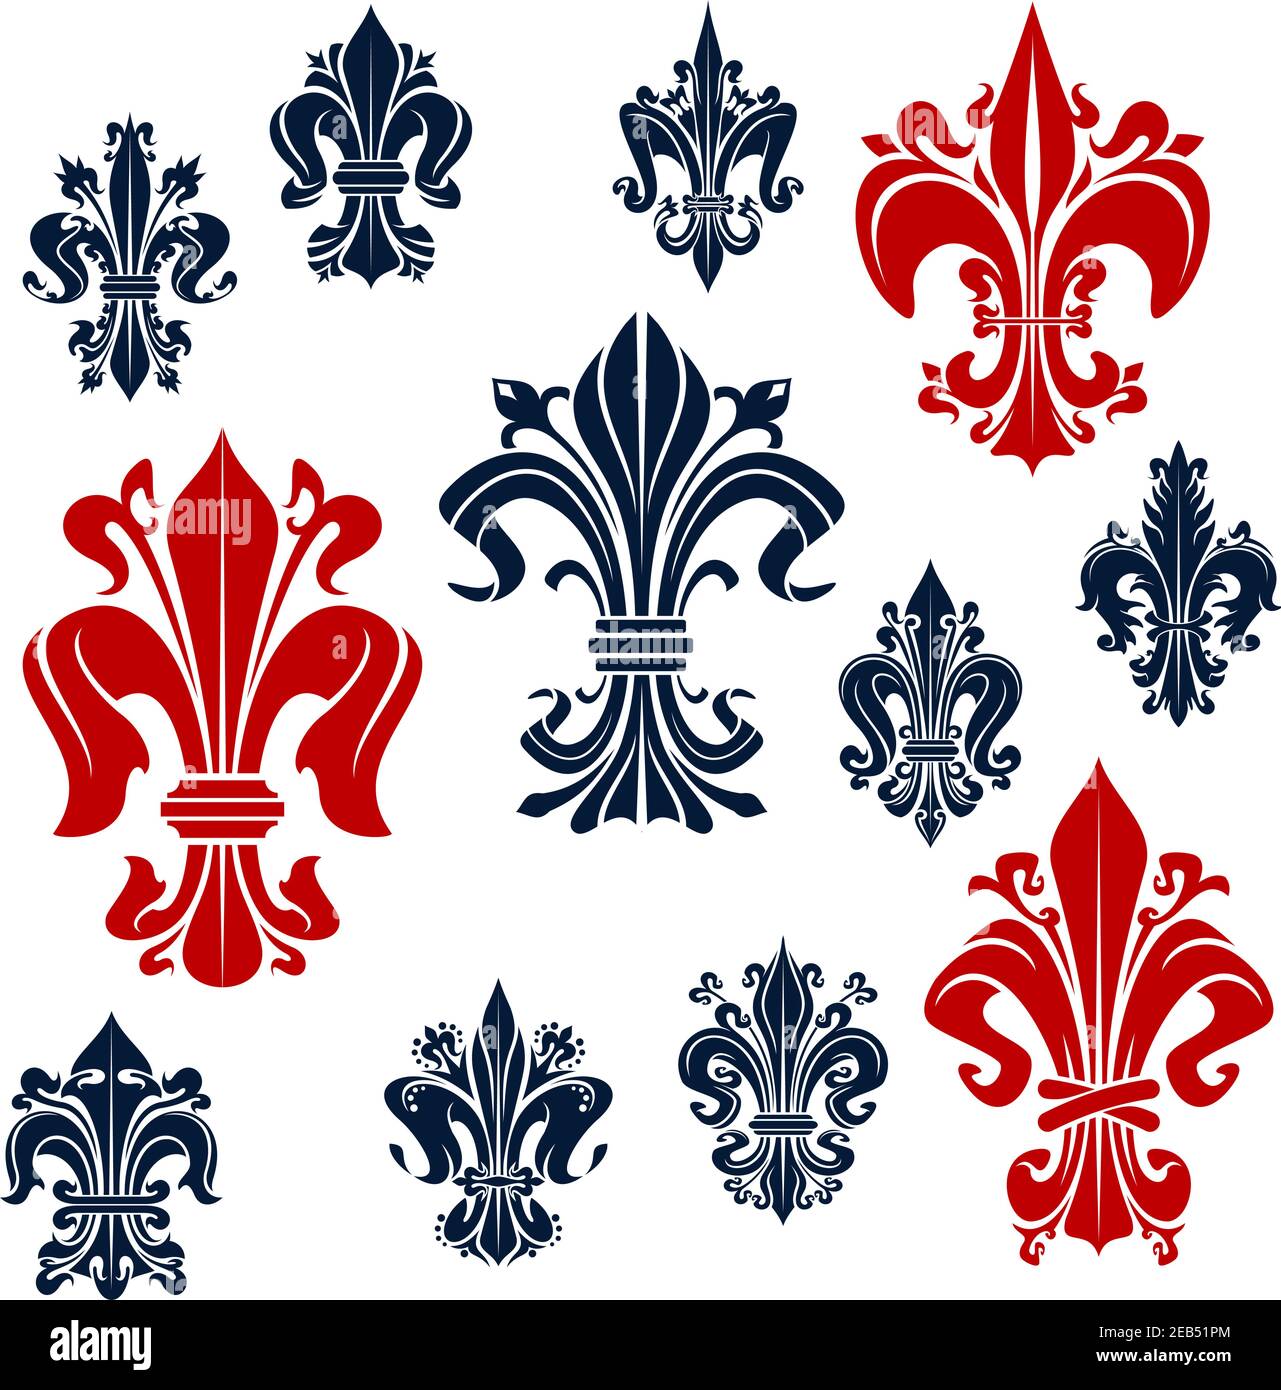 Splendidi simboli di colore rosso e blu fleur-de-lis dei fiori decorativi di giglio della monarchia francese, adornati da tendini ricci. Simboli reali medievali ornamentali fo Illustrazione Vettoriale